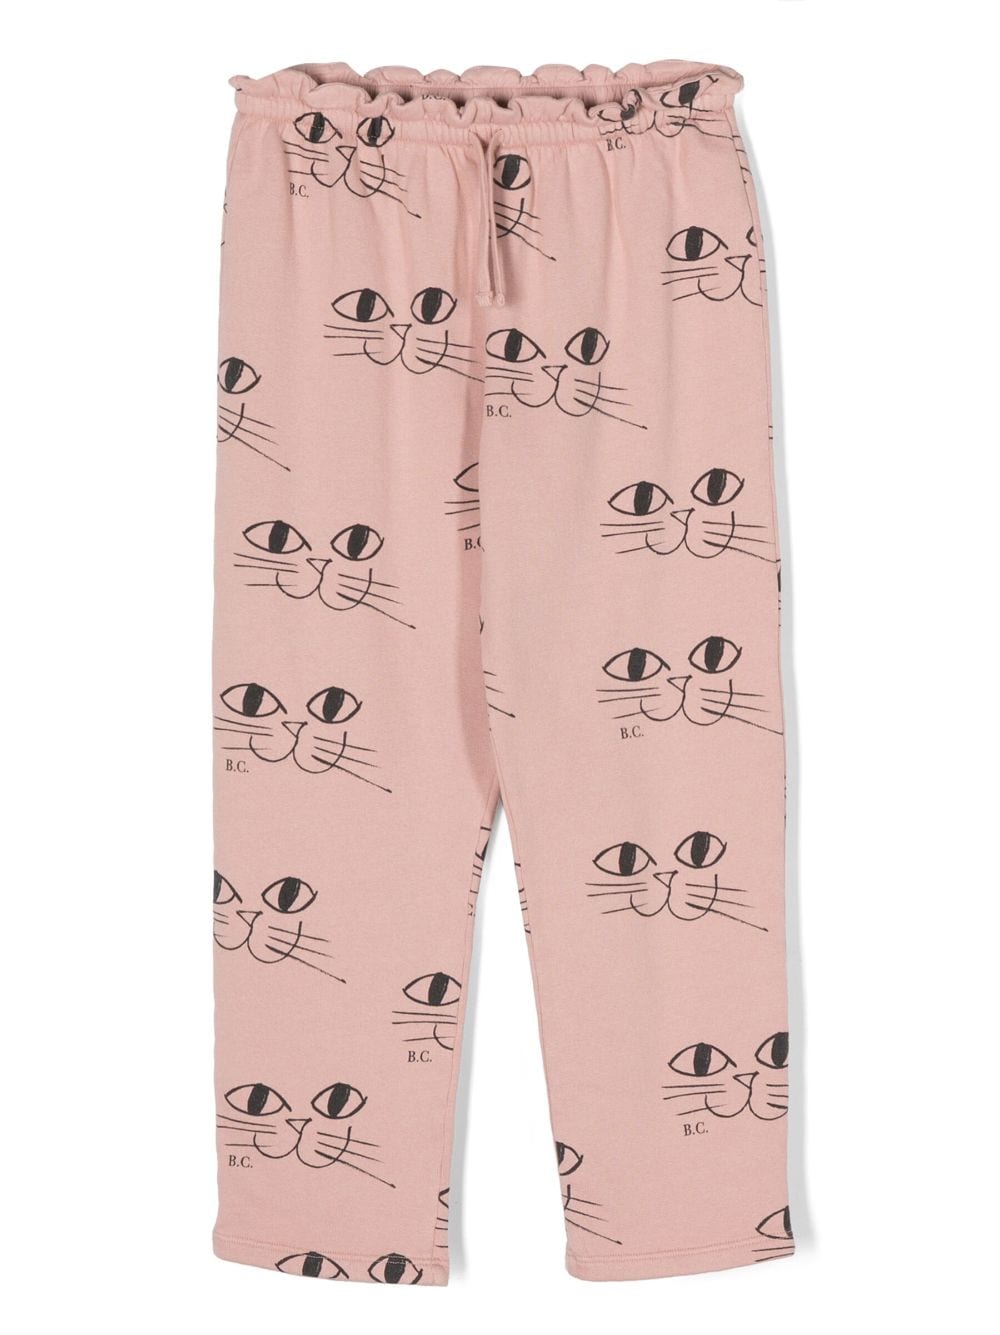 bobo choses pantalon smiling cat en coton biologique - rose